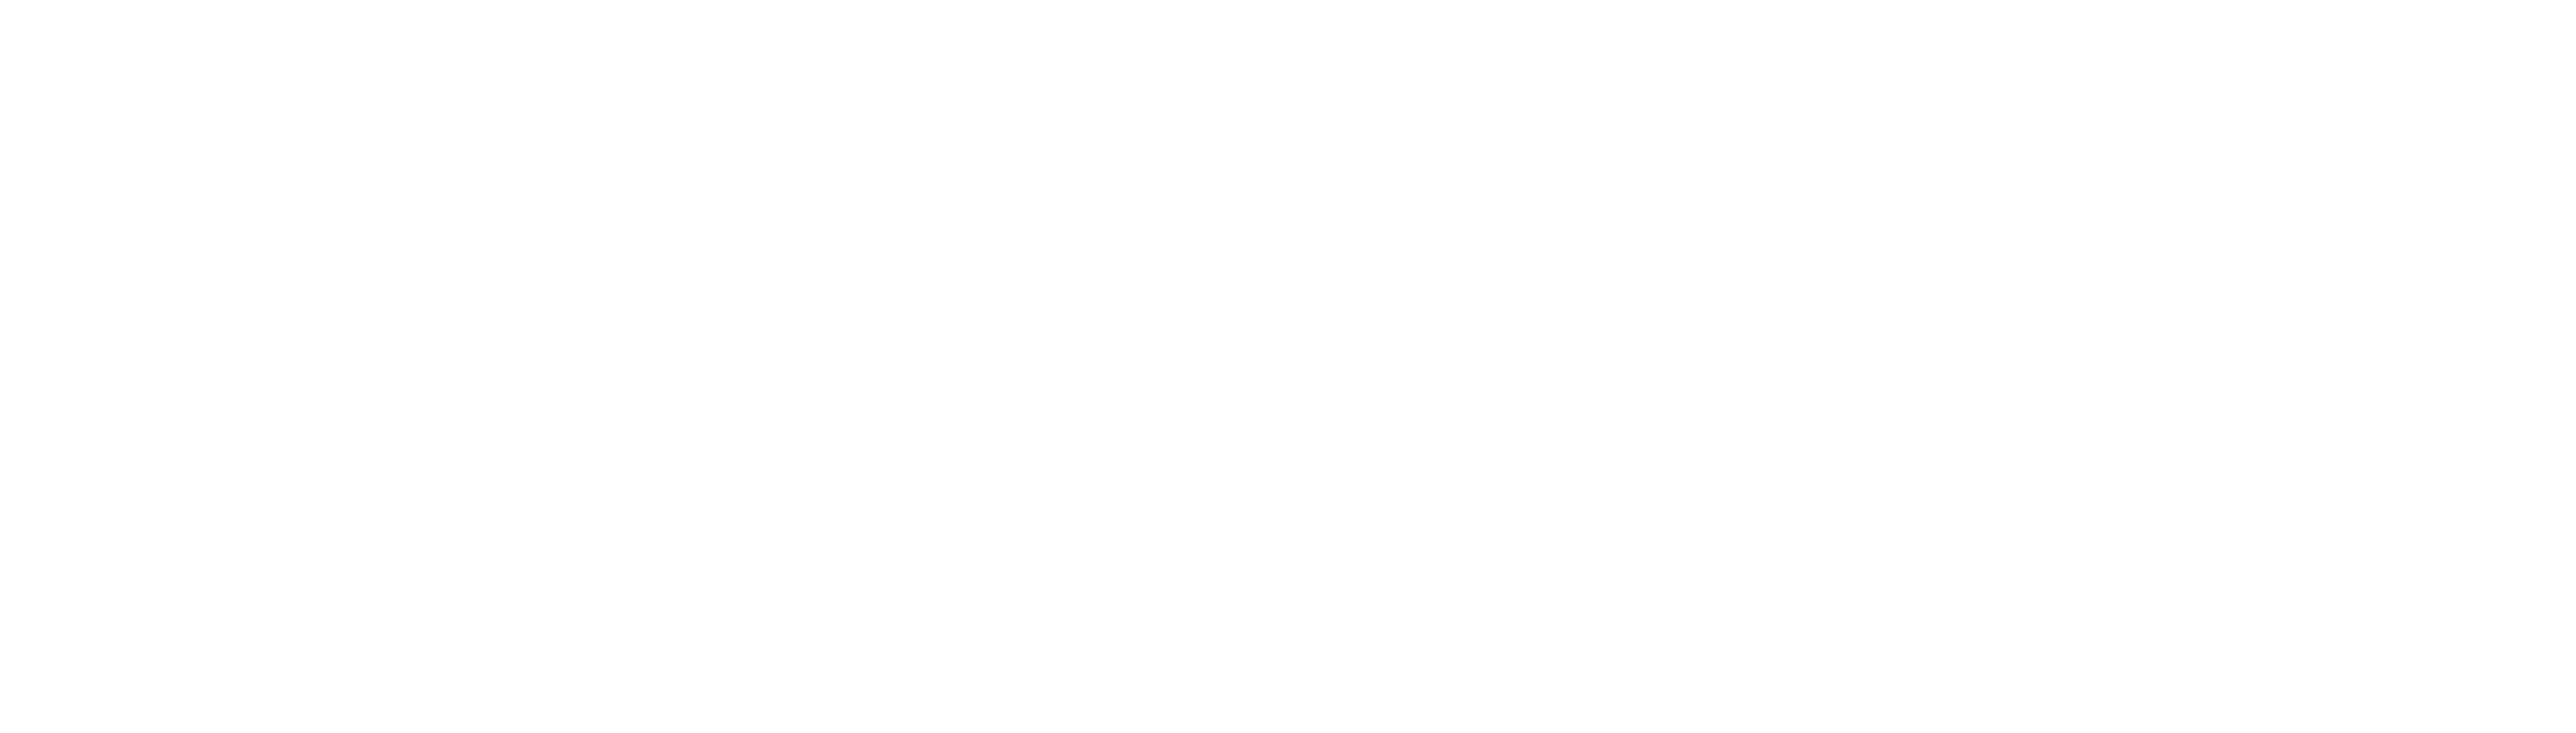 Folderly_Logo